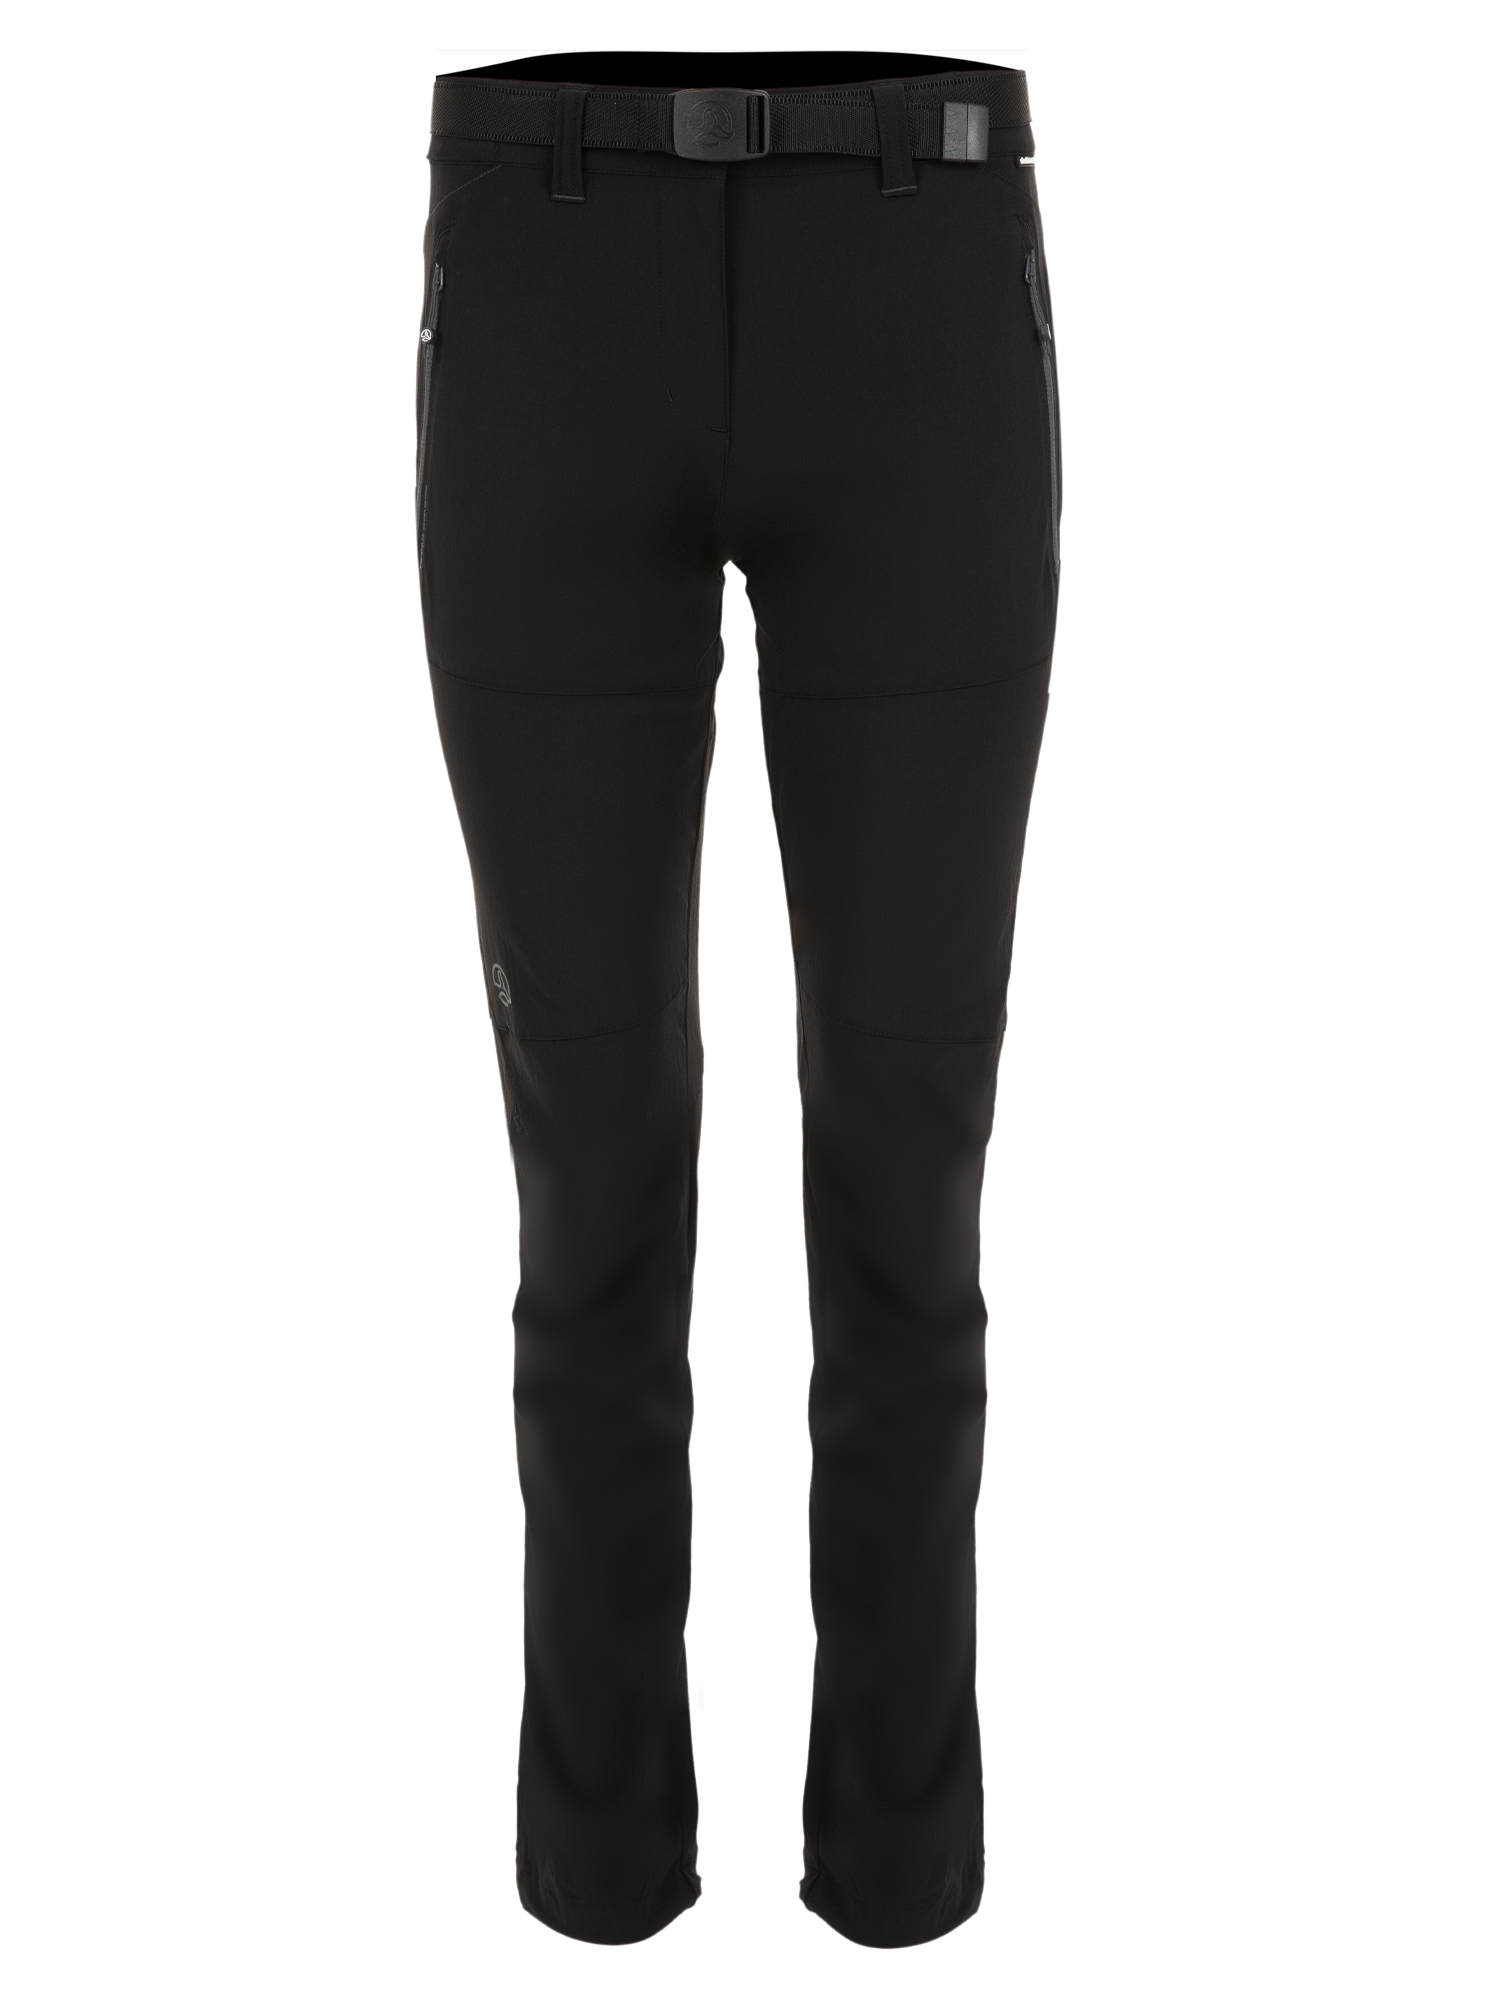 Спортивные брюки женские Ternua Friza Pt W черные XS